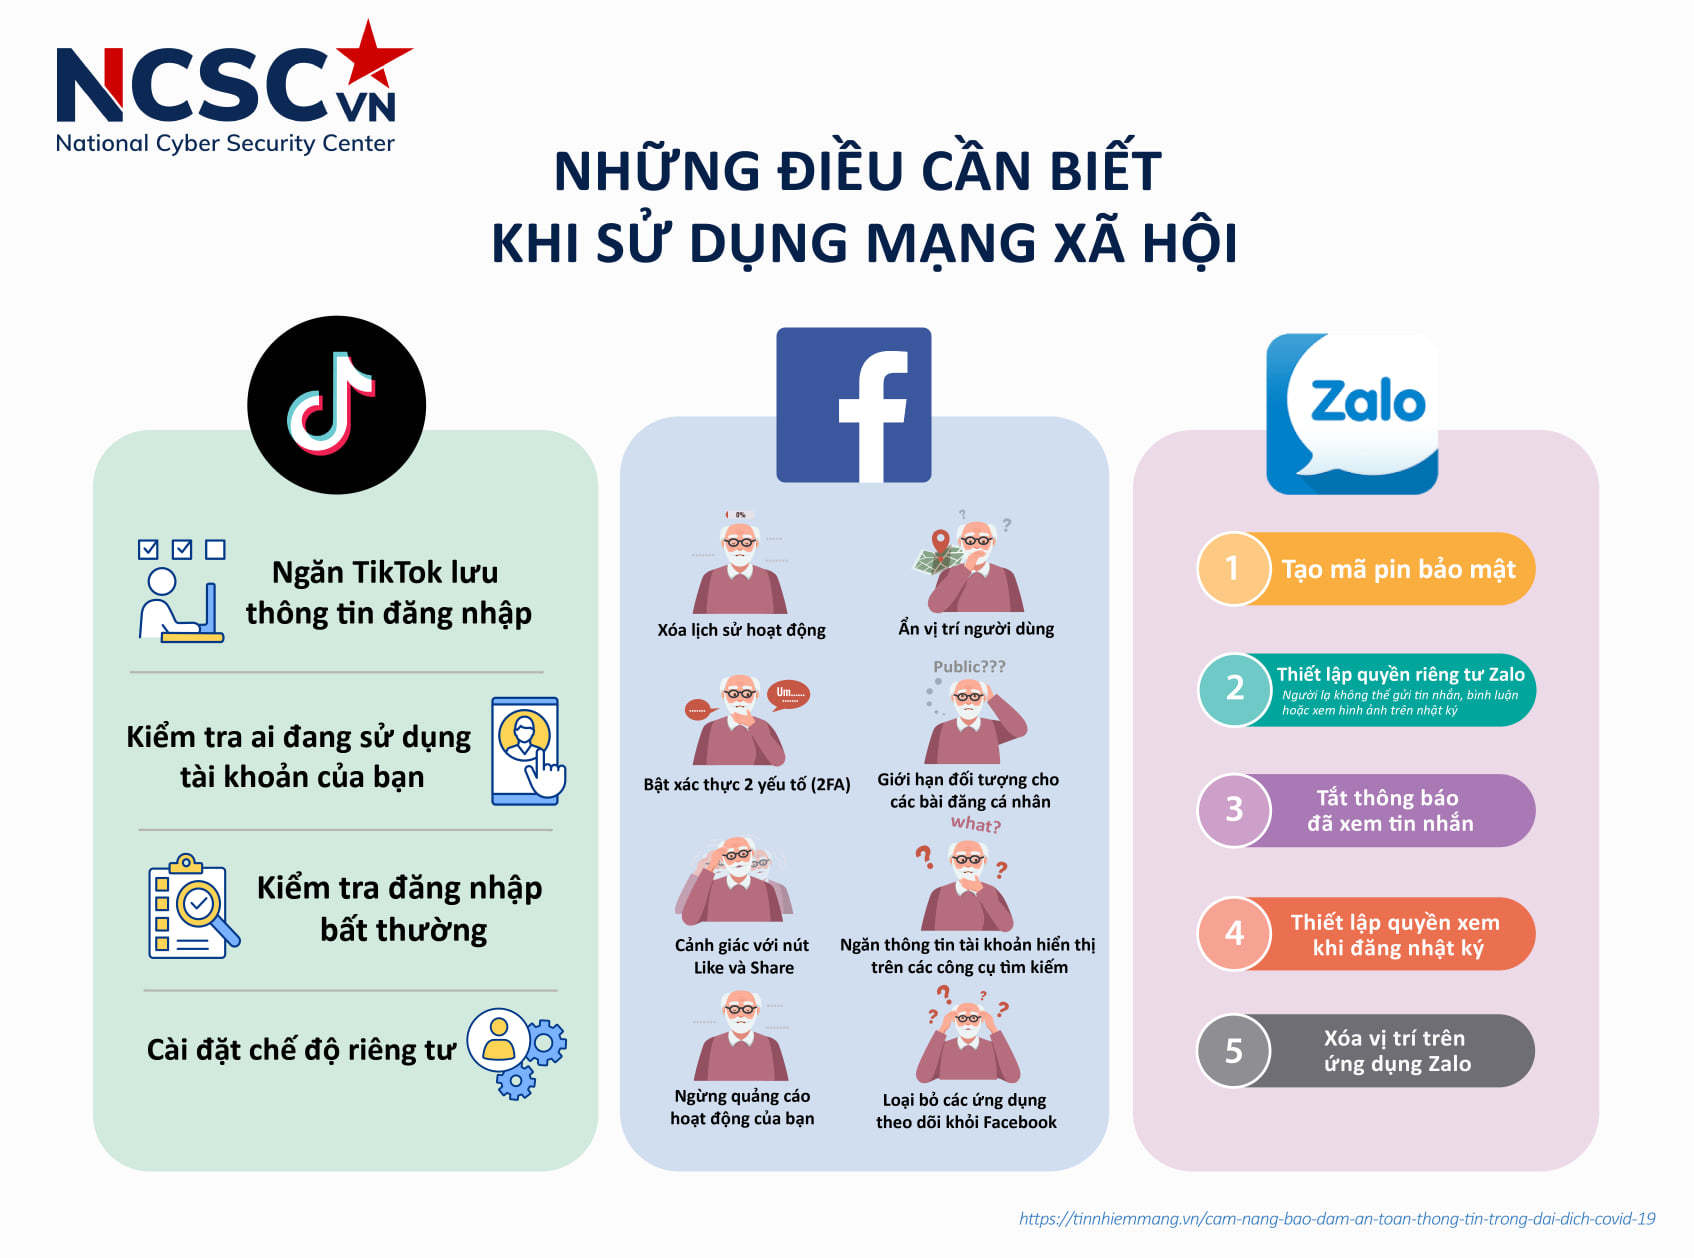 Sử dụng mạng xã hội an toàn | Nguồn: NCSC, 2021